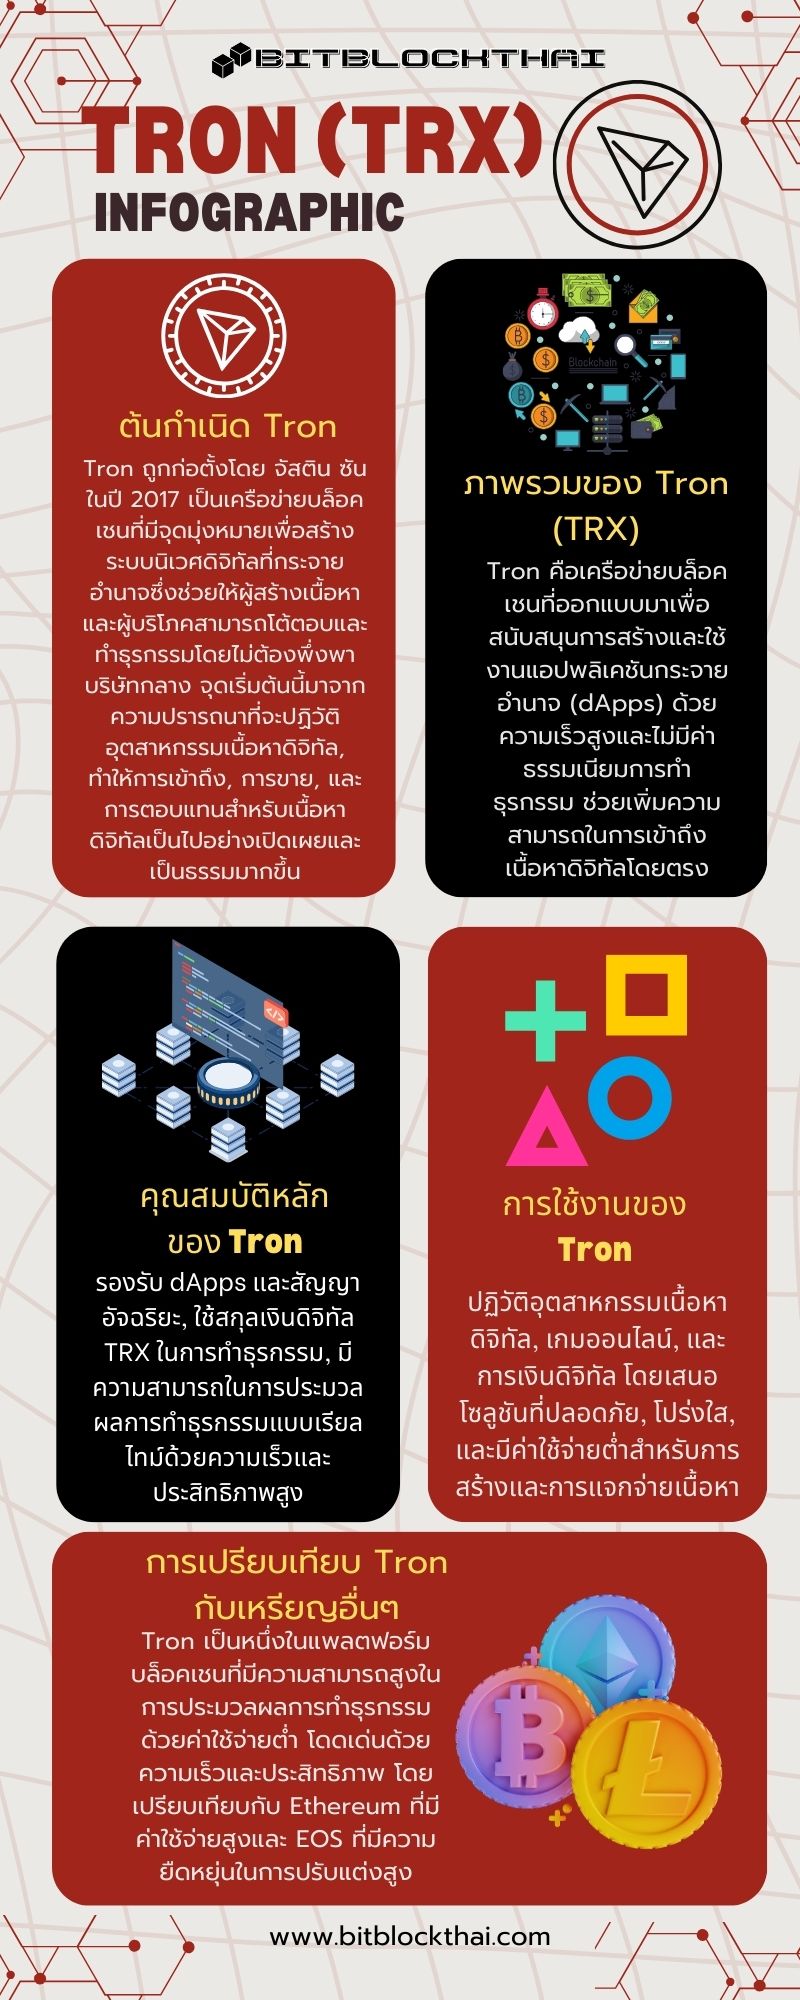 tron trx infographic thai